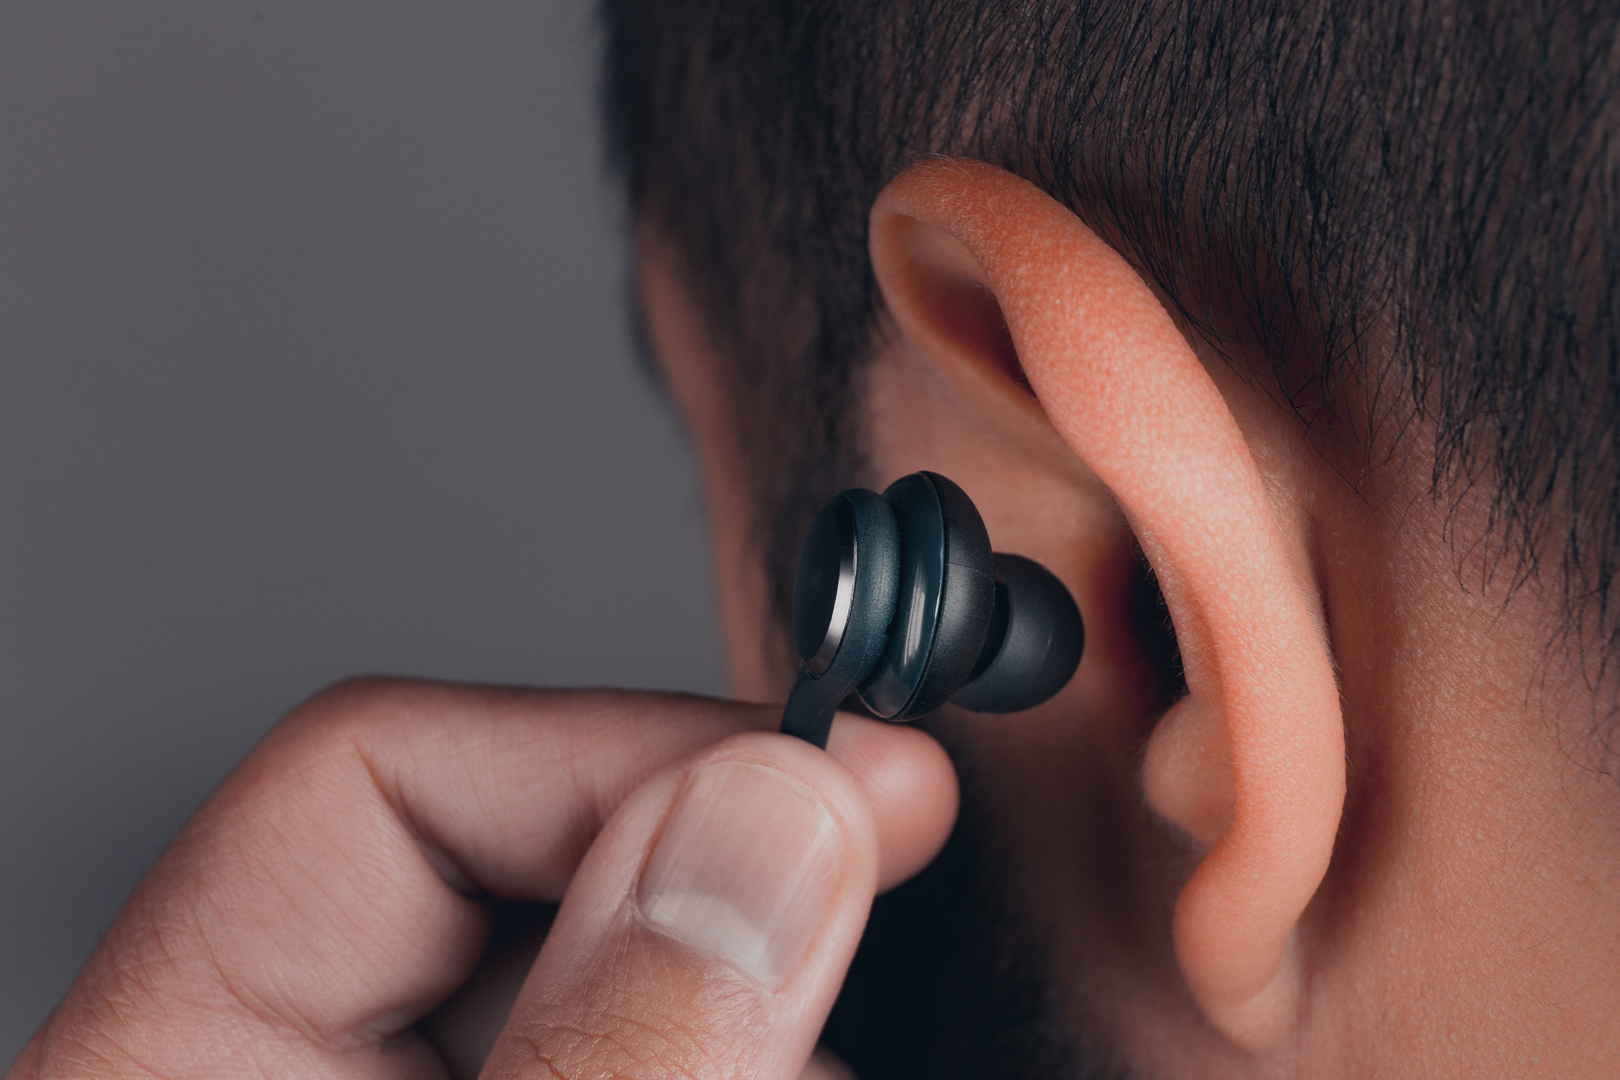 خبير يحذر من مخاطر صحية ترتبط باستخدام سماعات الأذنين يوميا